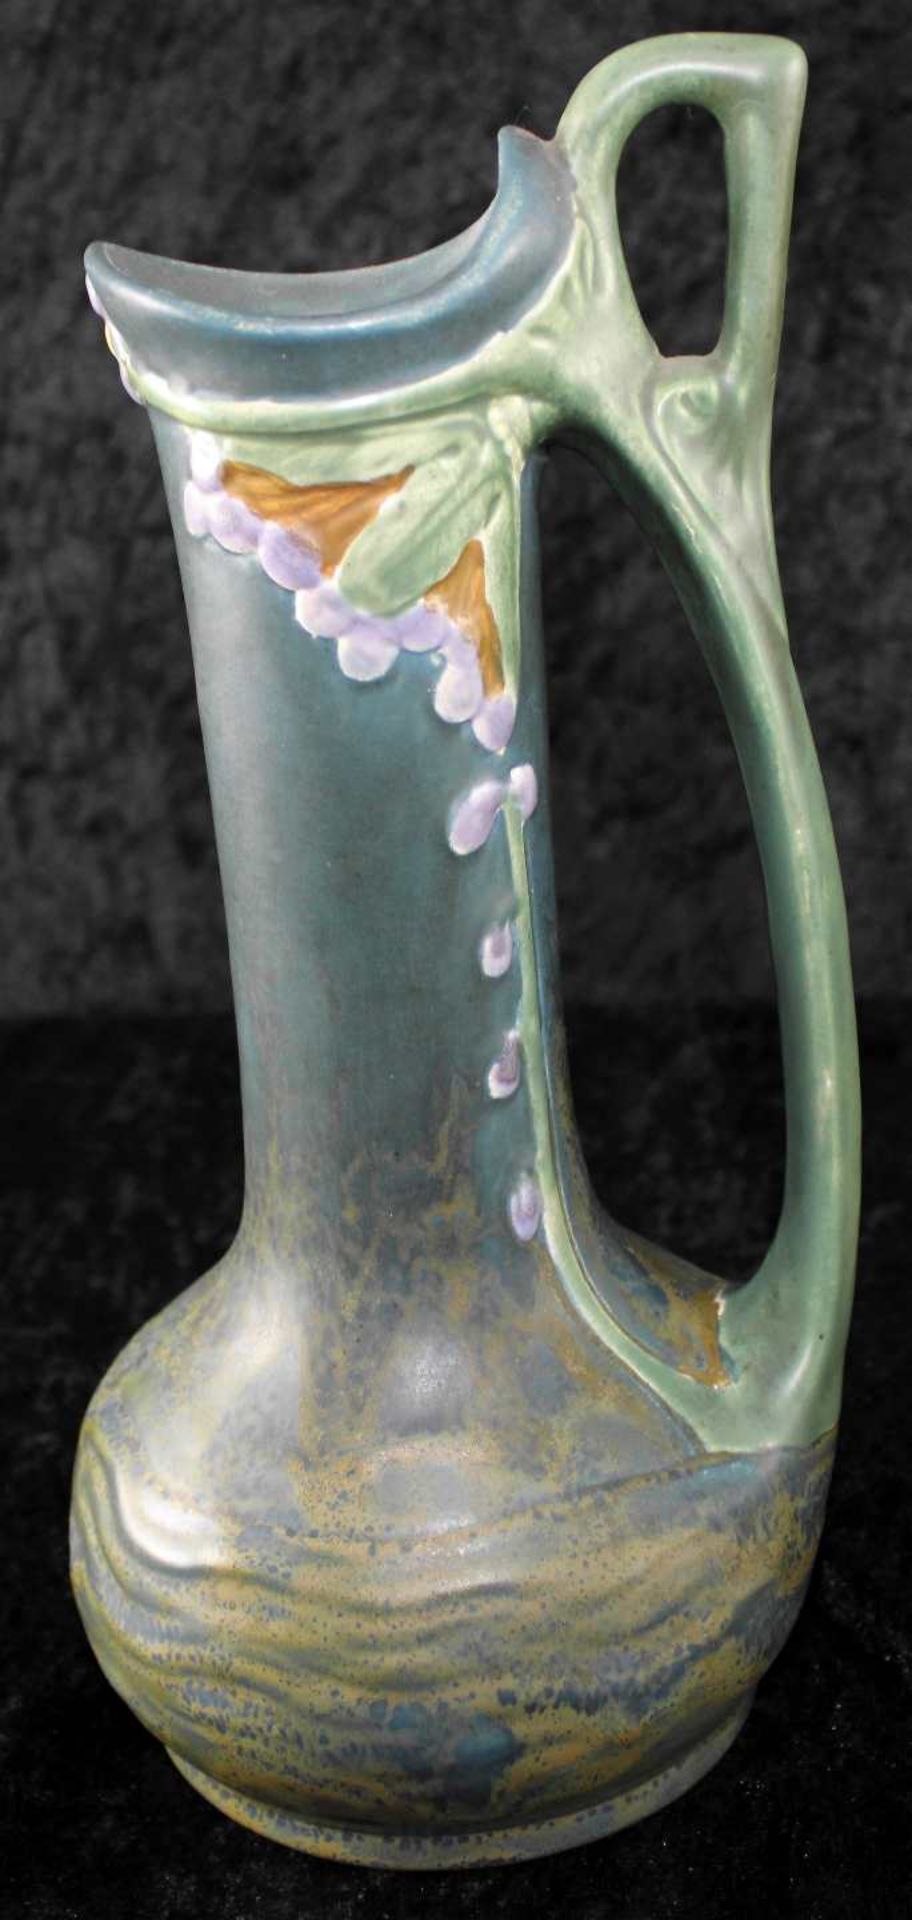 Vertiko Keramik- Set, 3-tlg., Jardiniere u. zwei Vasen, Austria Keramik, Jugendstil um 1900 - Bild 3 aus 4